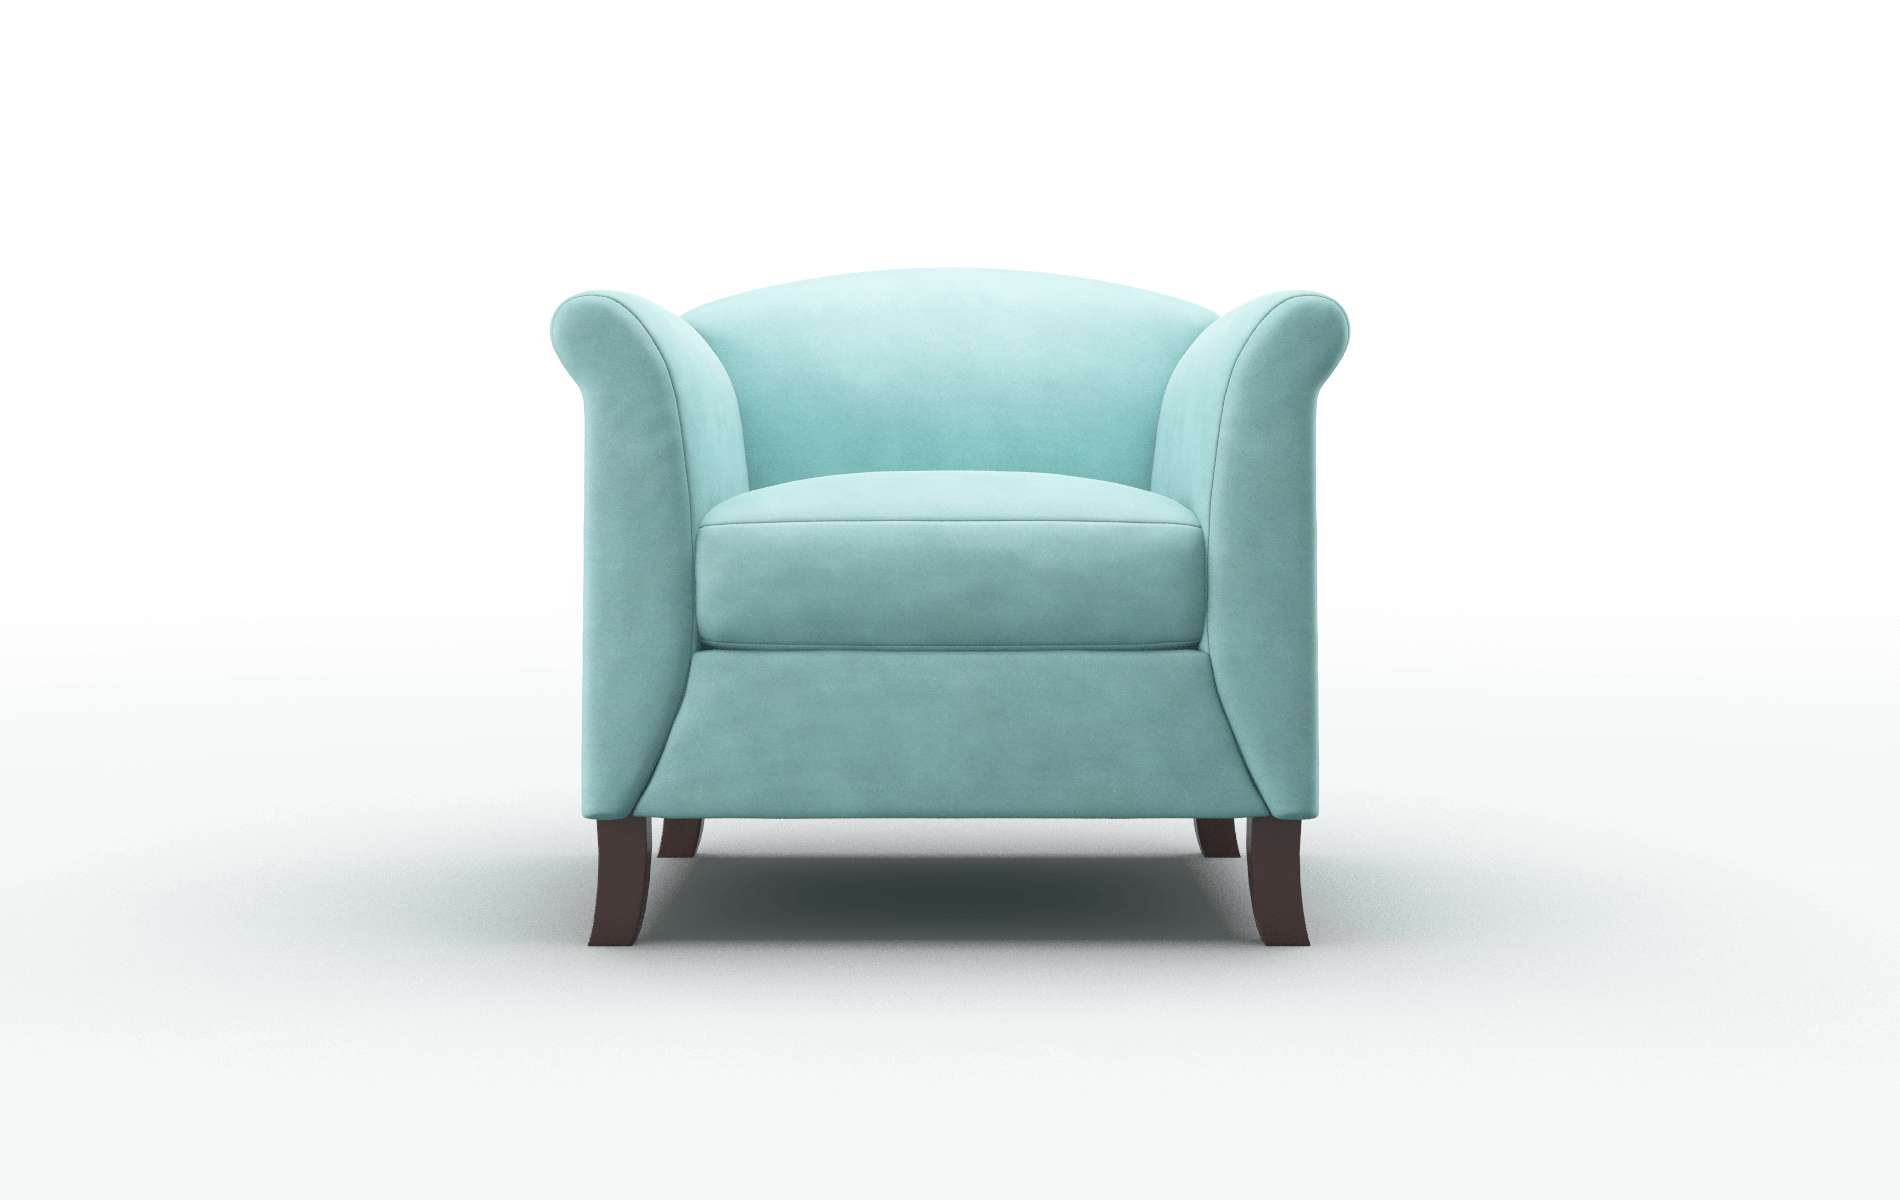 Crete Curious Turquoise chair espresso legs